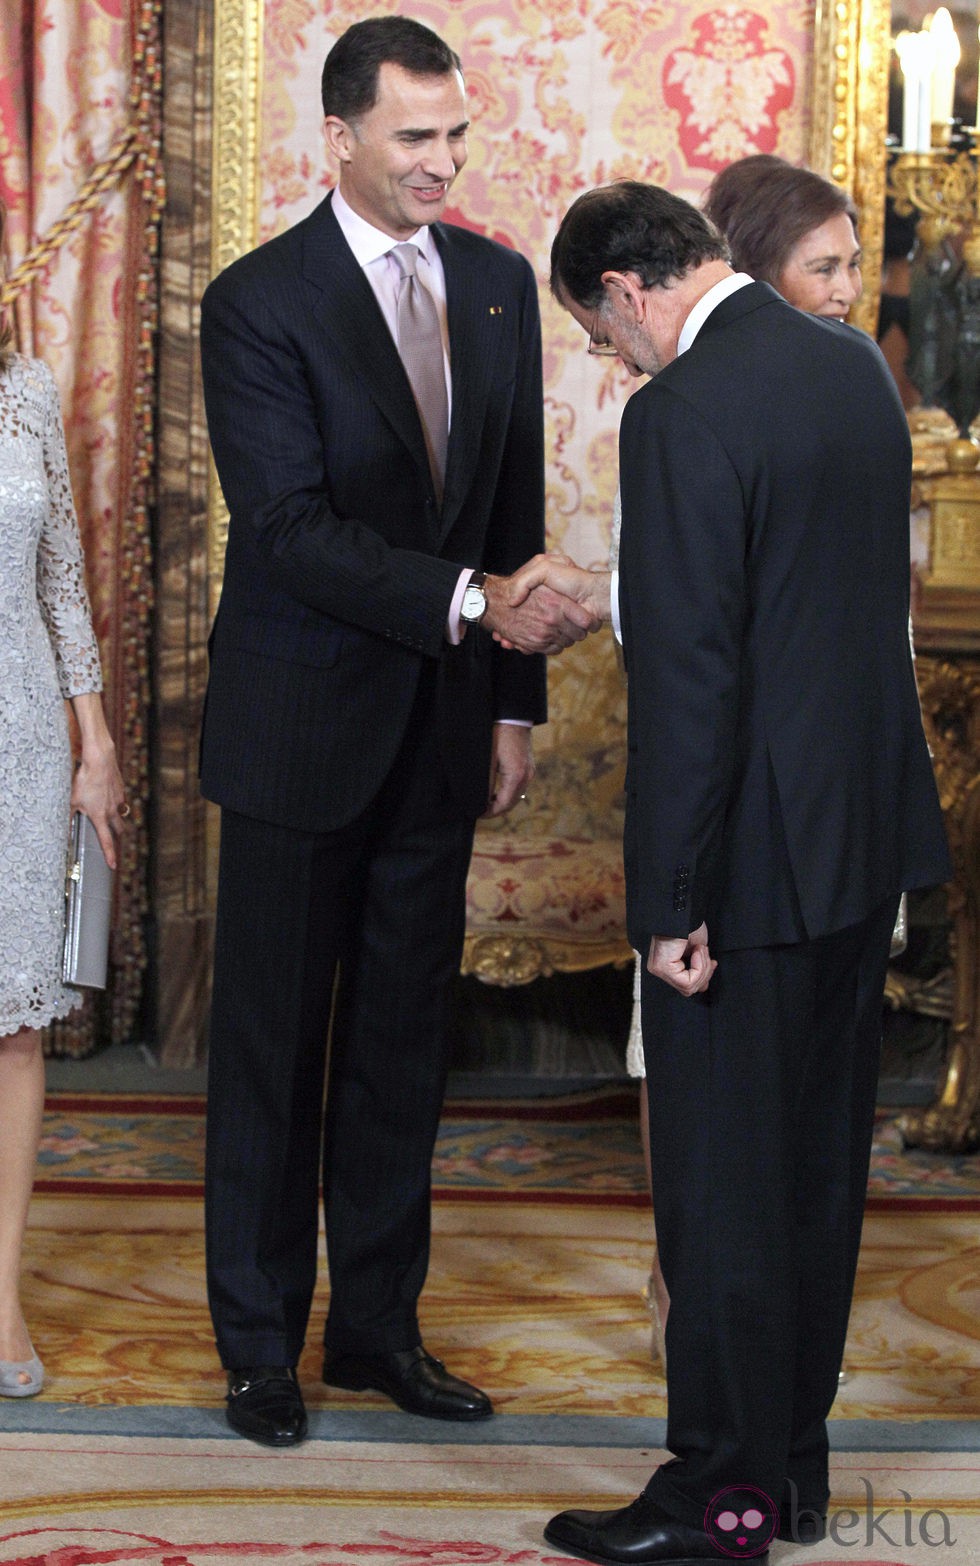 Mariano Rajoy hace la reverencia al Príncipe Felipe en la cena de gala al presidente de Perú